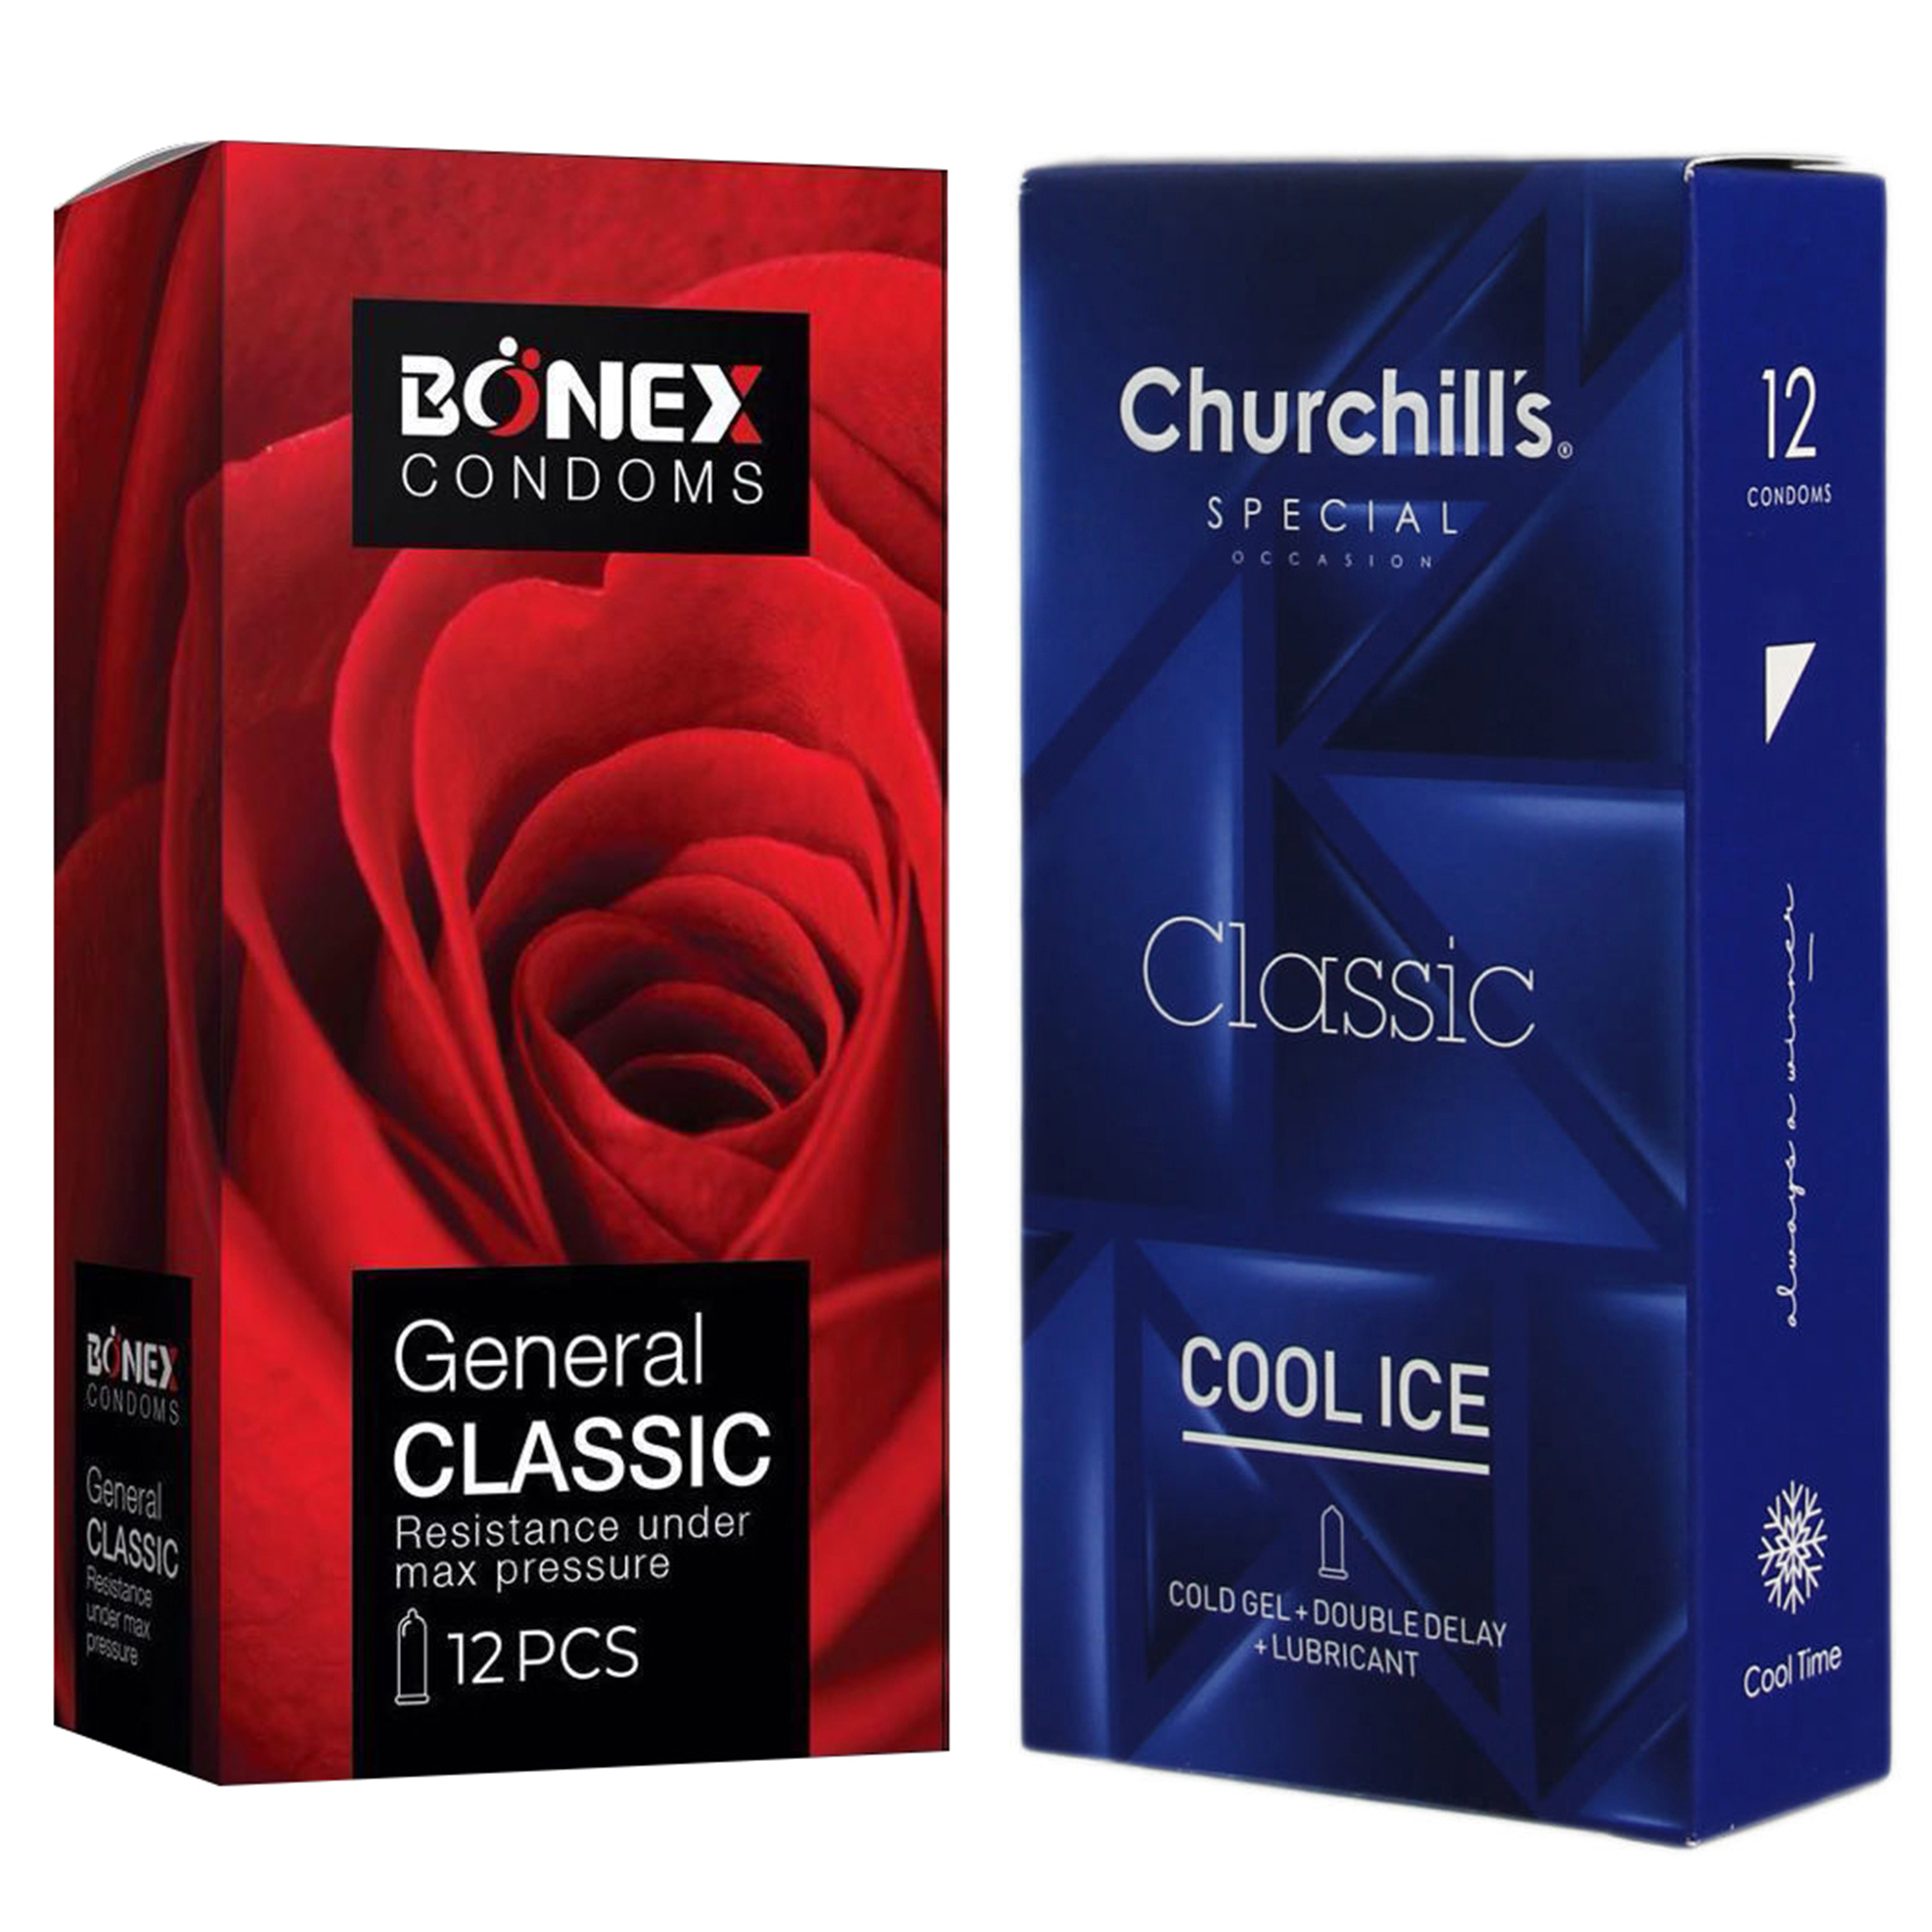 کاندوم چرچیلز مدل Cool Ice بسته 12 عددی به همراه کاندوم بونکس مدل General Classic بسته 12 عددی 